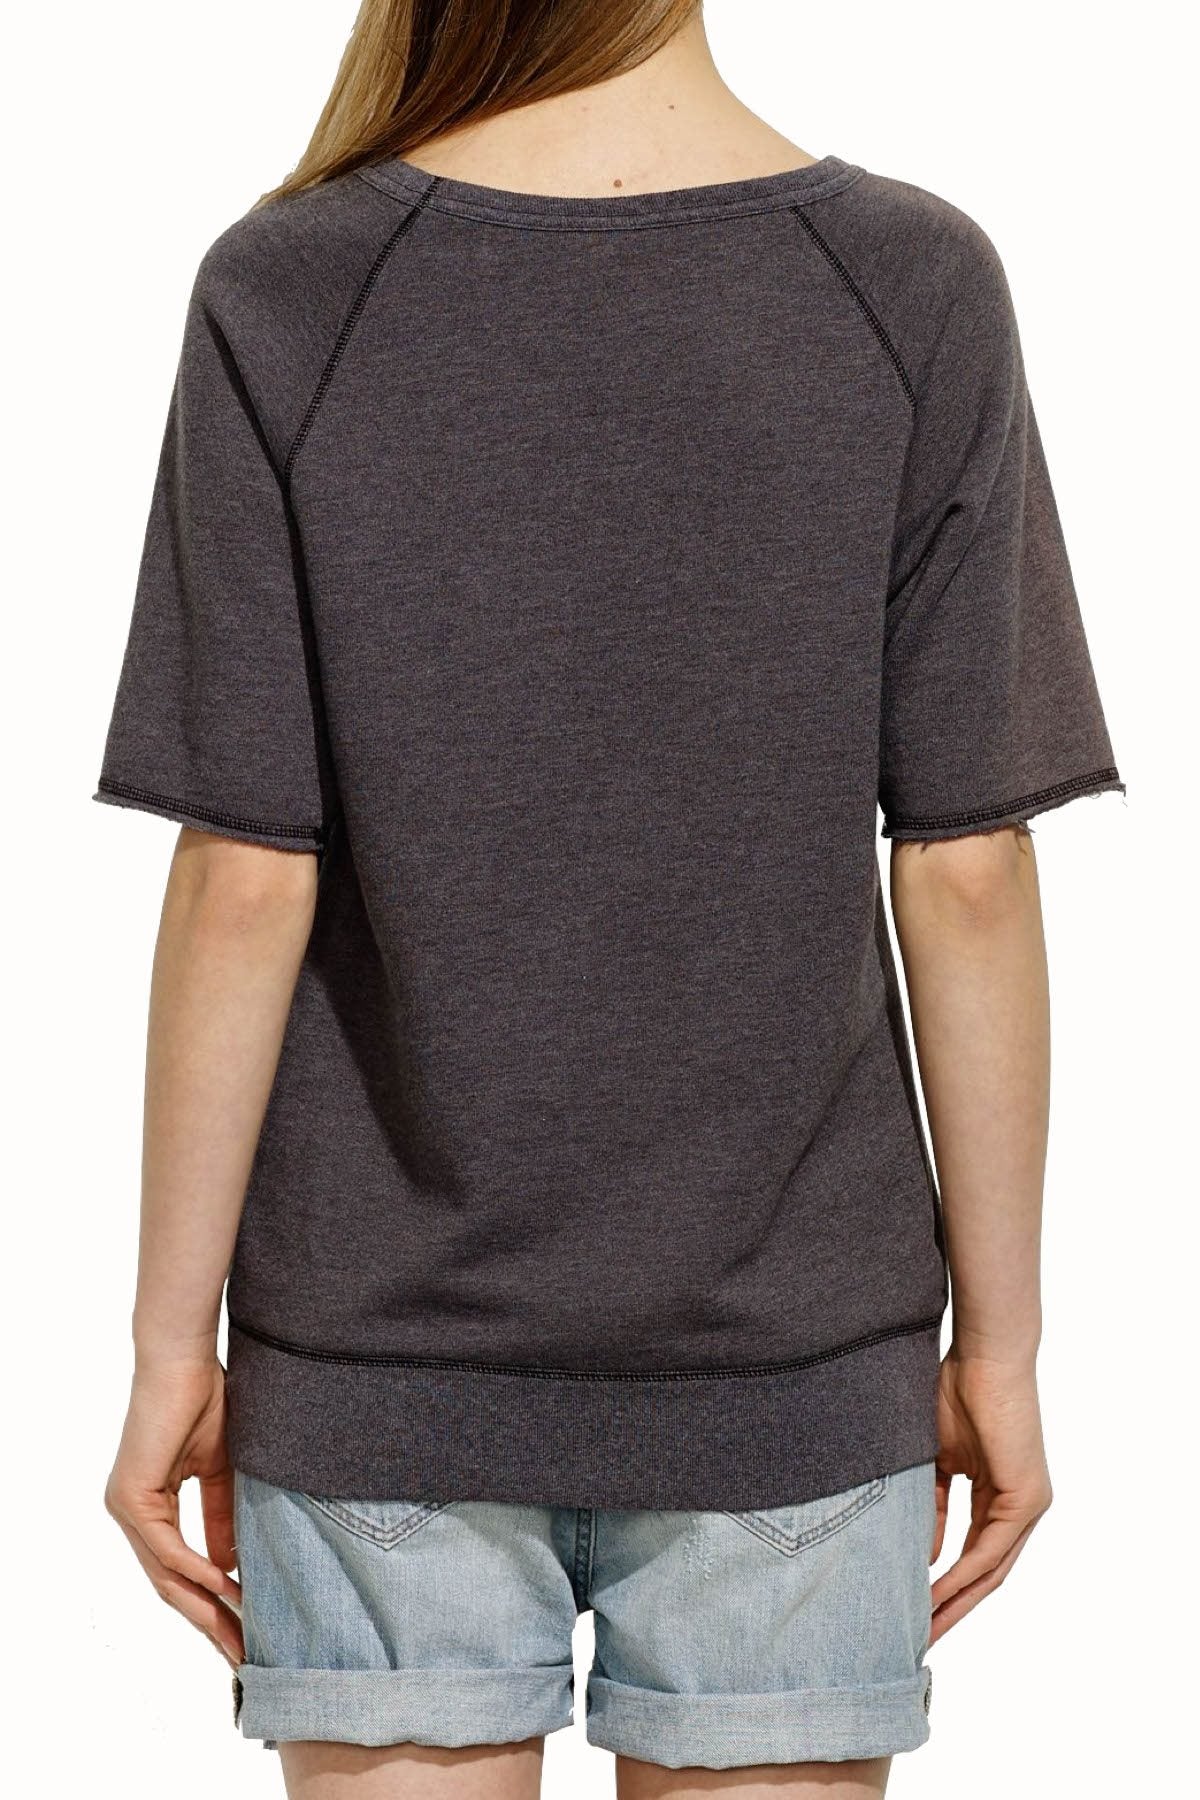 Rxmance Unisex Faded-Black Short-Sleeve Sweatshirt